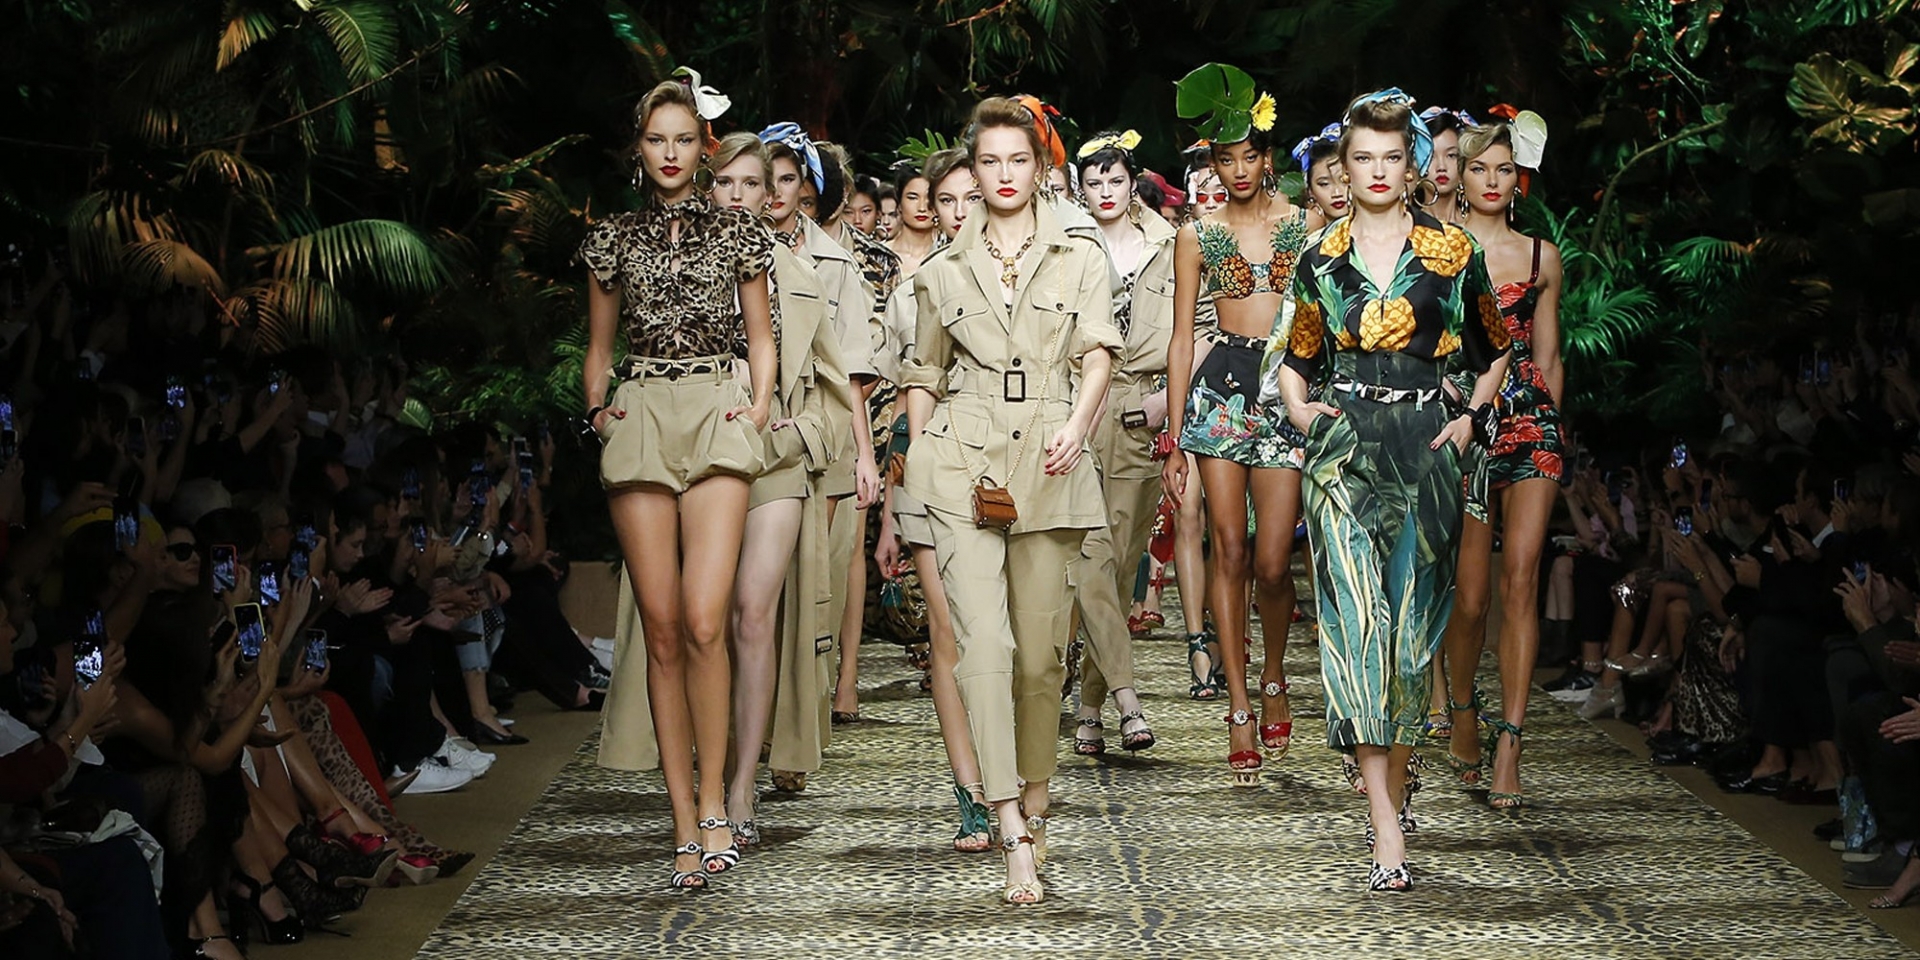 Dolce&Gabbana mang lên sàn diễn một hình ảnh phóng khoáng đậm chất rừng xanh